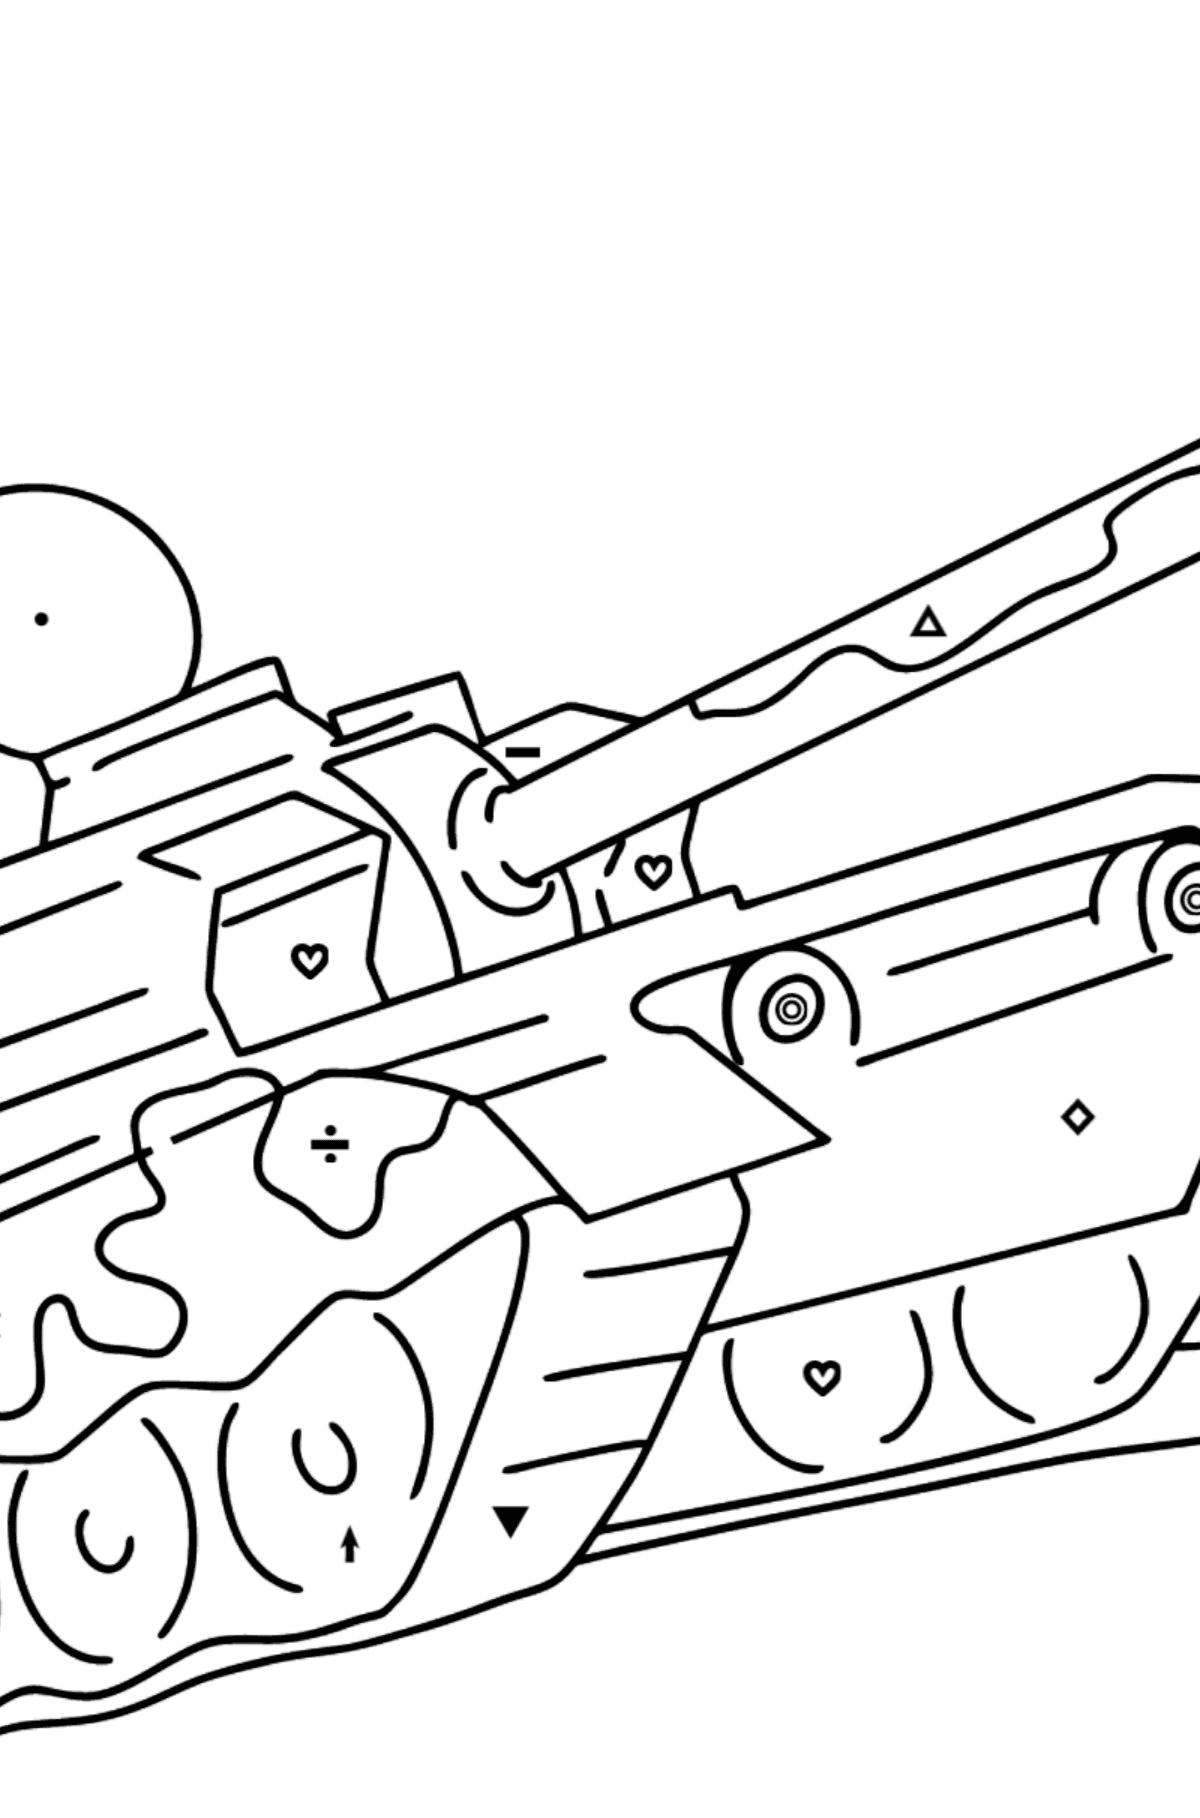 Desenho para colorir de tanques militares - Colorir por Símbolos para Crianças